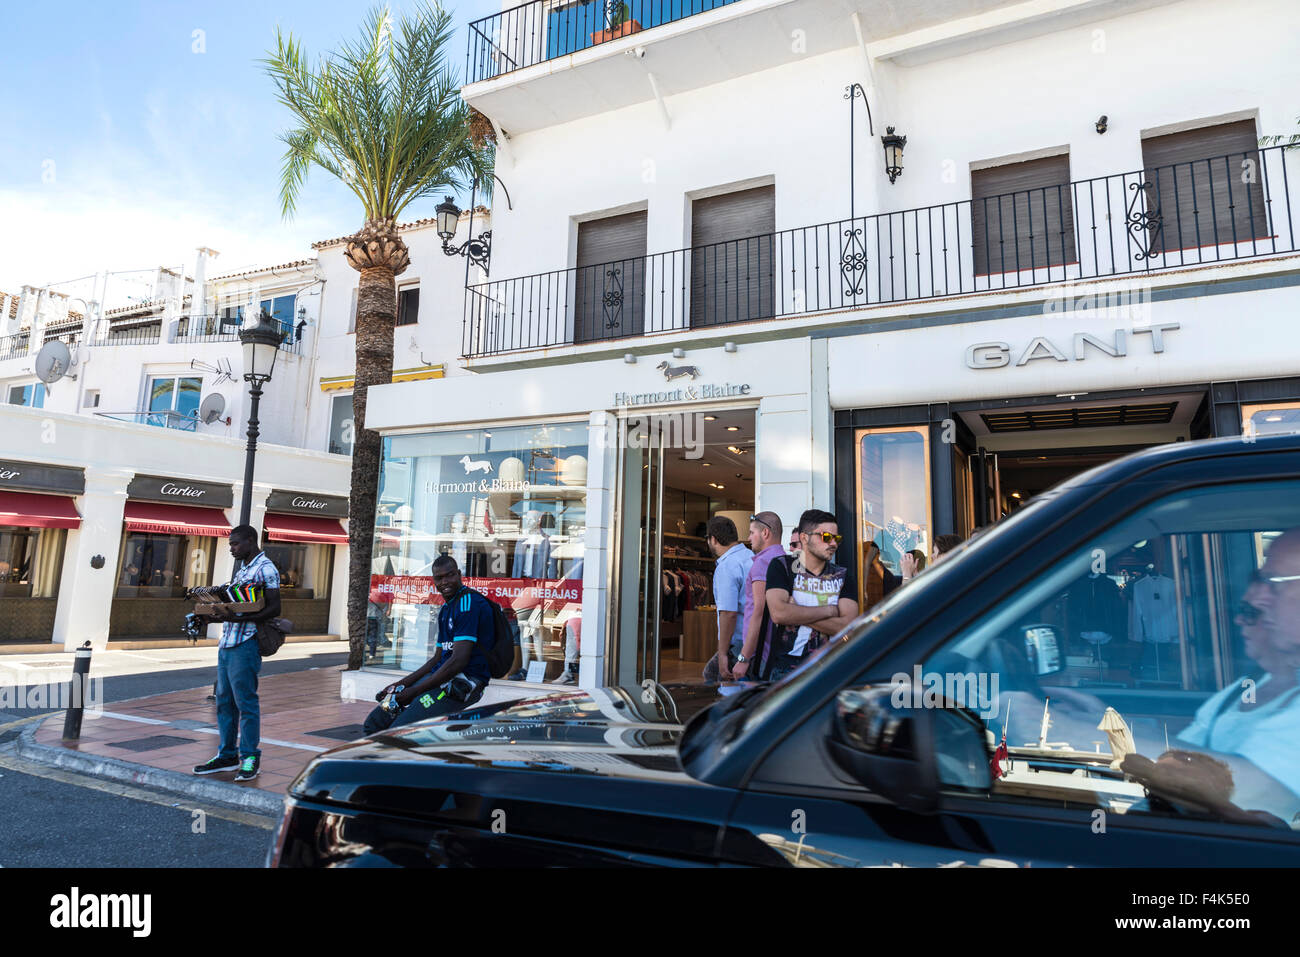 Centro de compras en Puerto Banús, un puerto deportivo cerca de Marbella,  Andalucía. varios vendedores callejeros esperan vender sus mercancías  Fotografía de stock - Alamy